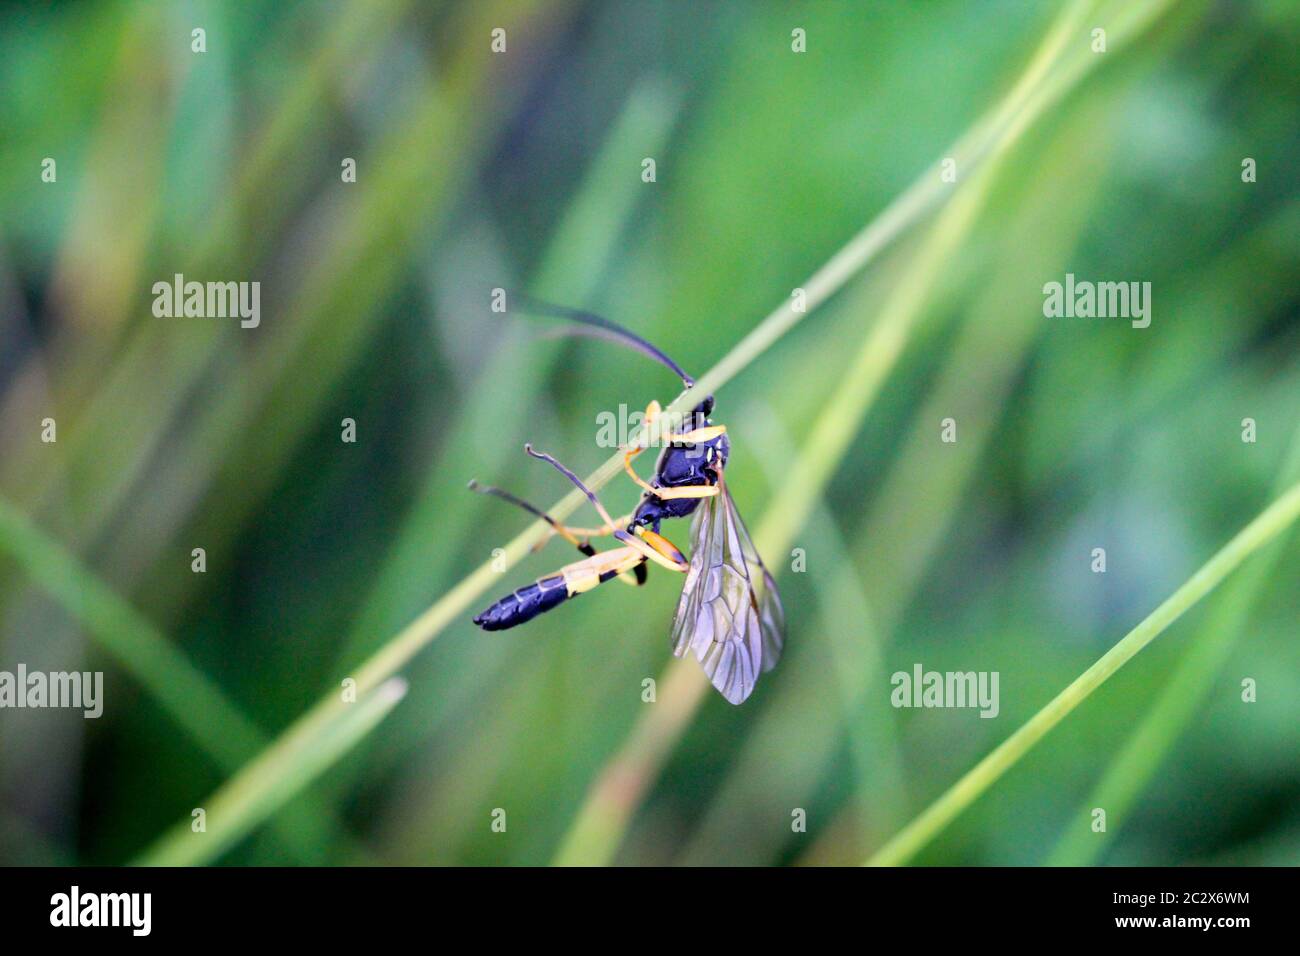 una vespa o un insetto simile su una lama di erba Foto Stock